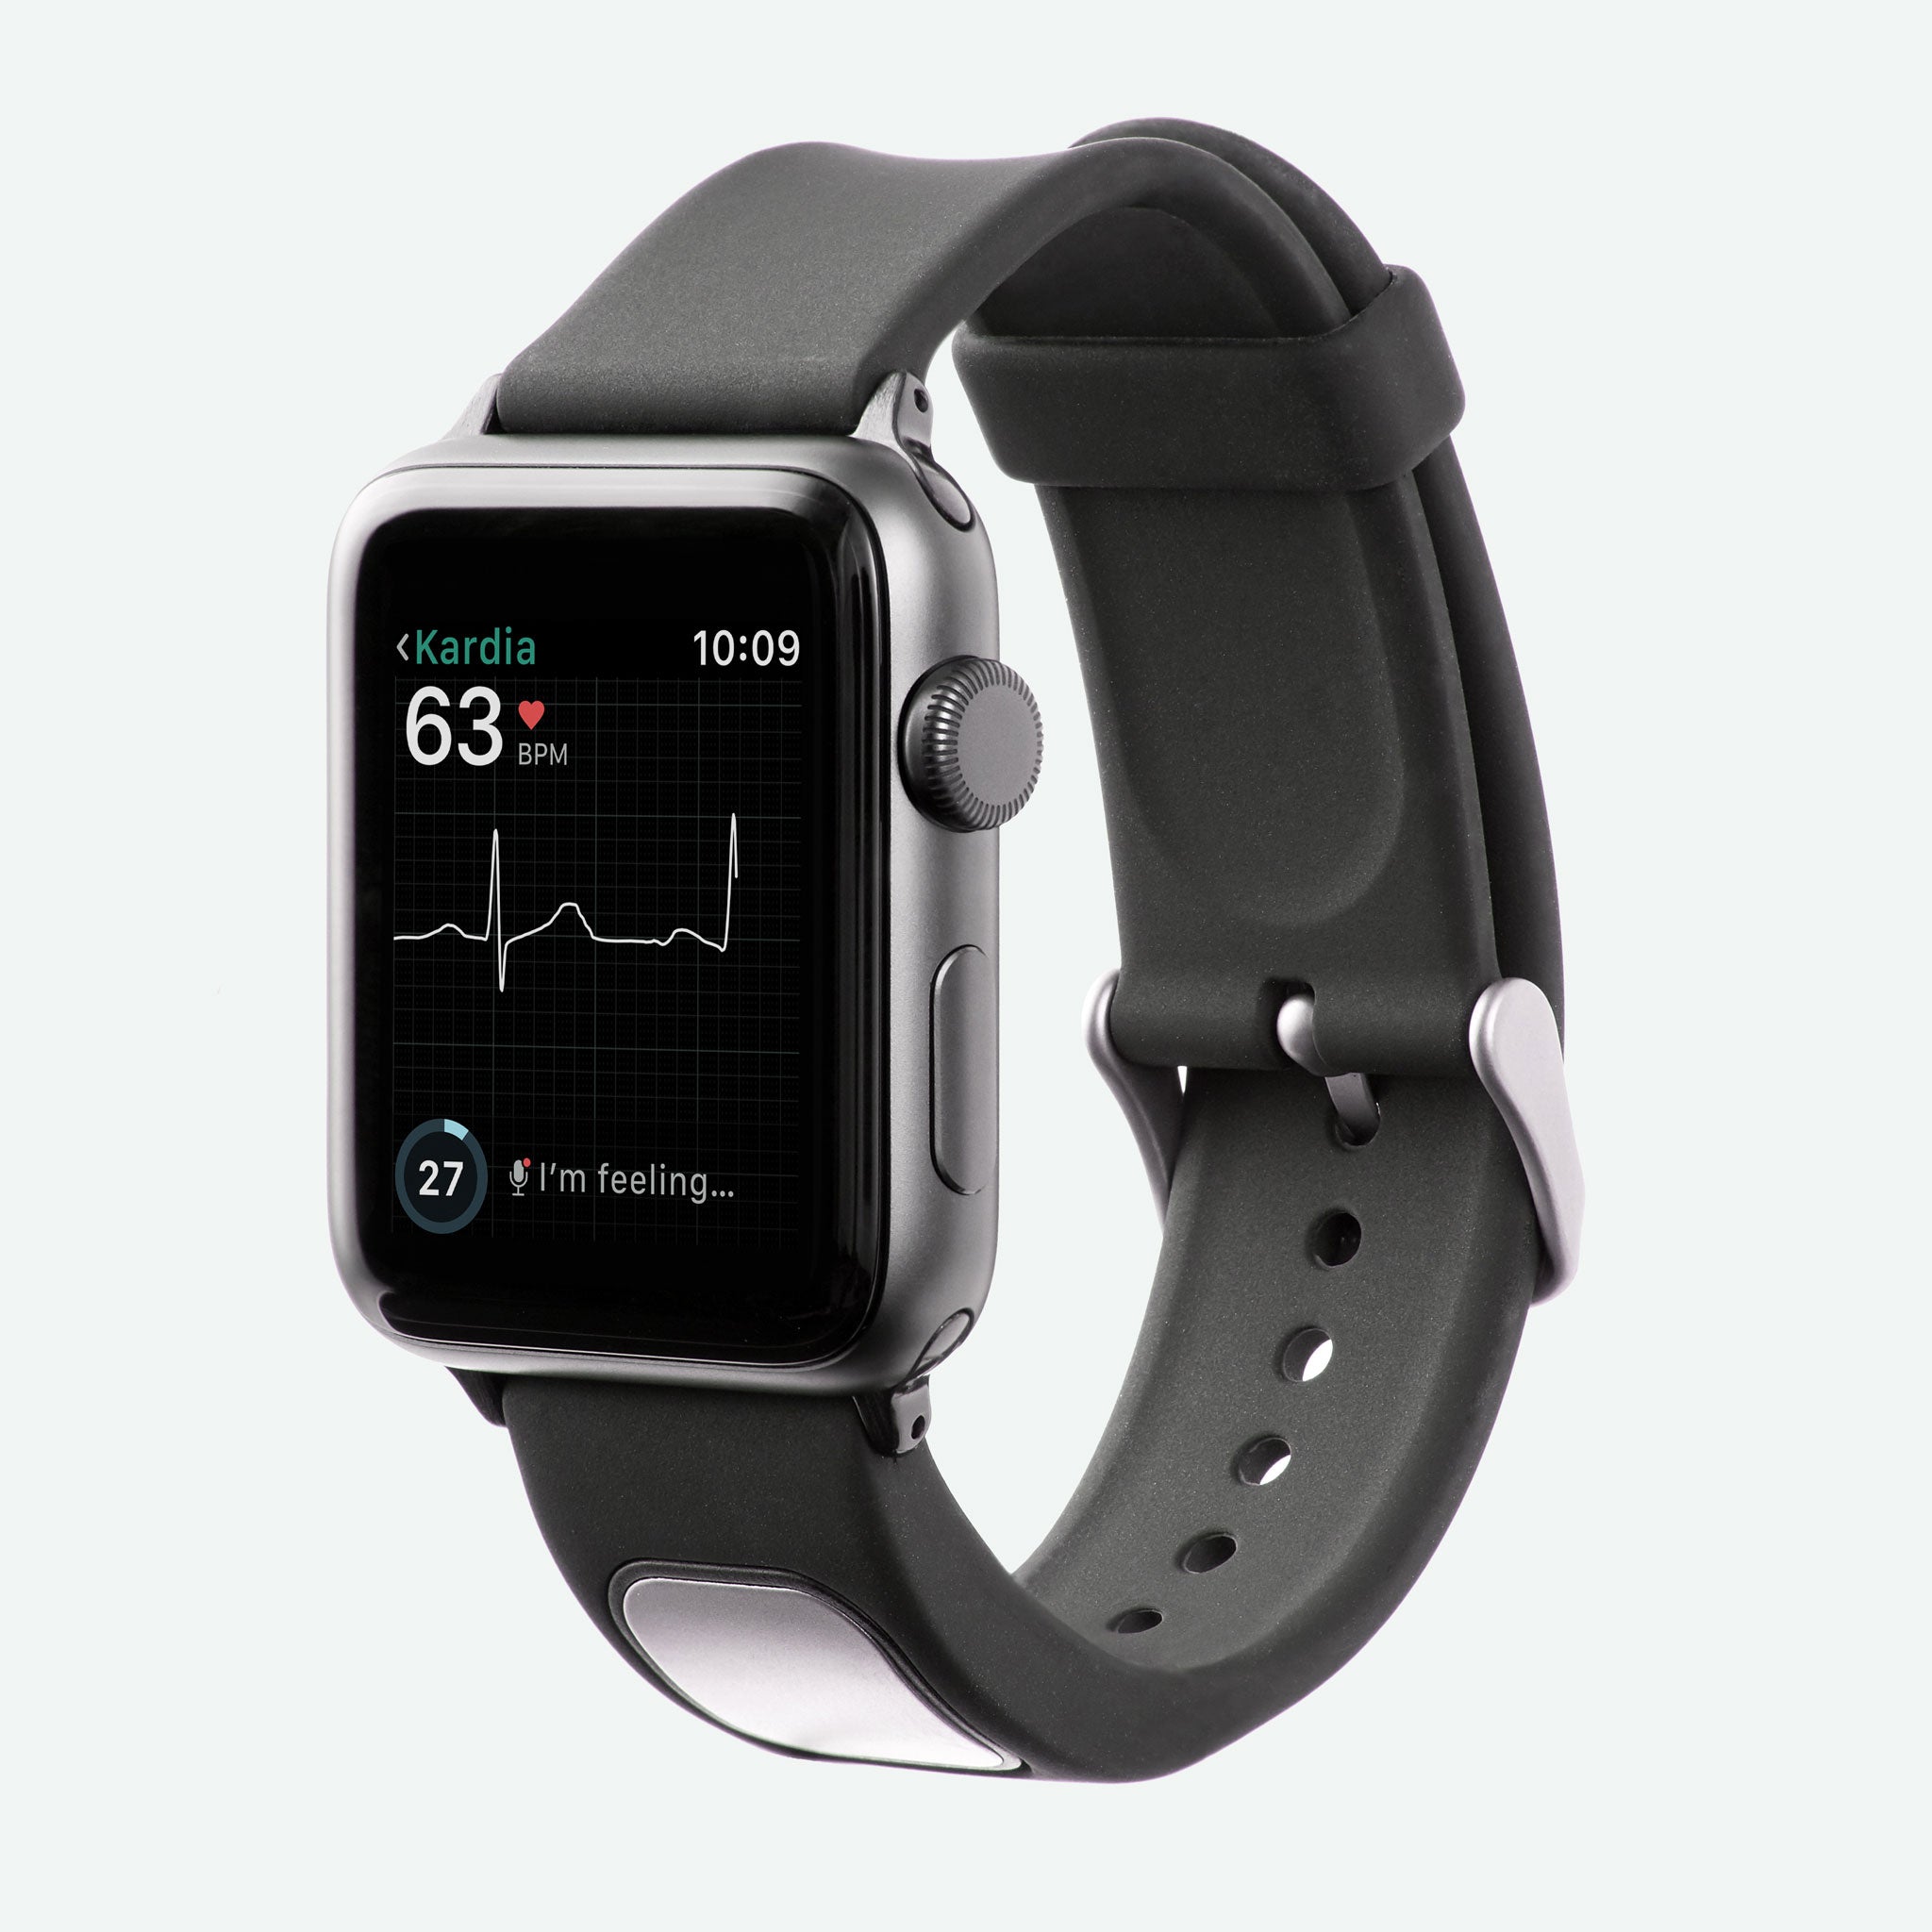 KardiaBand - EKG Band for Your Apple Watch®